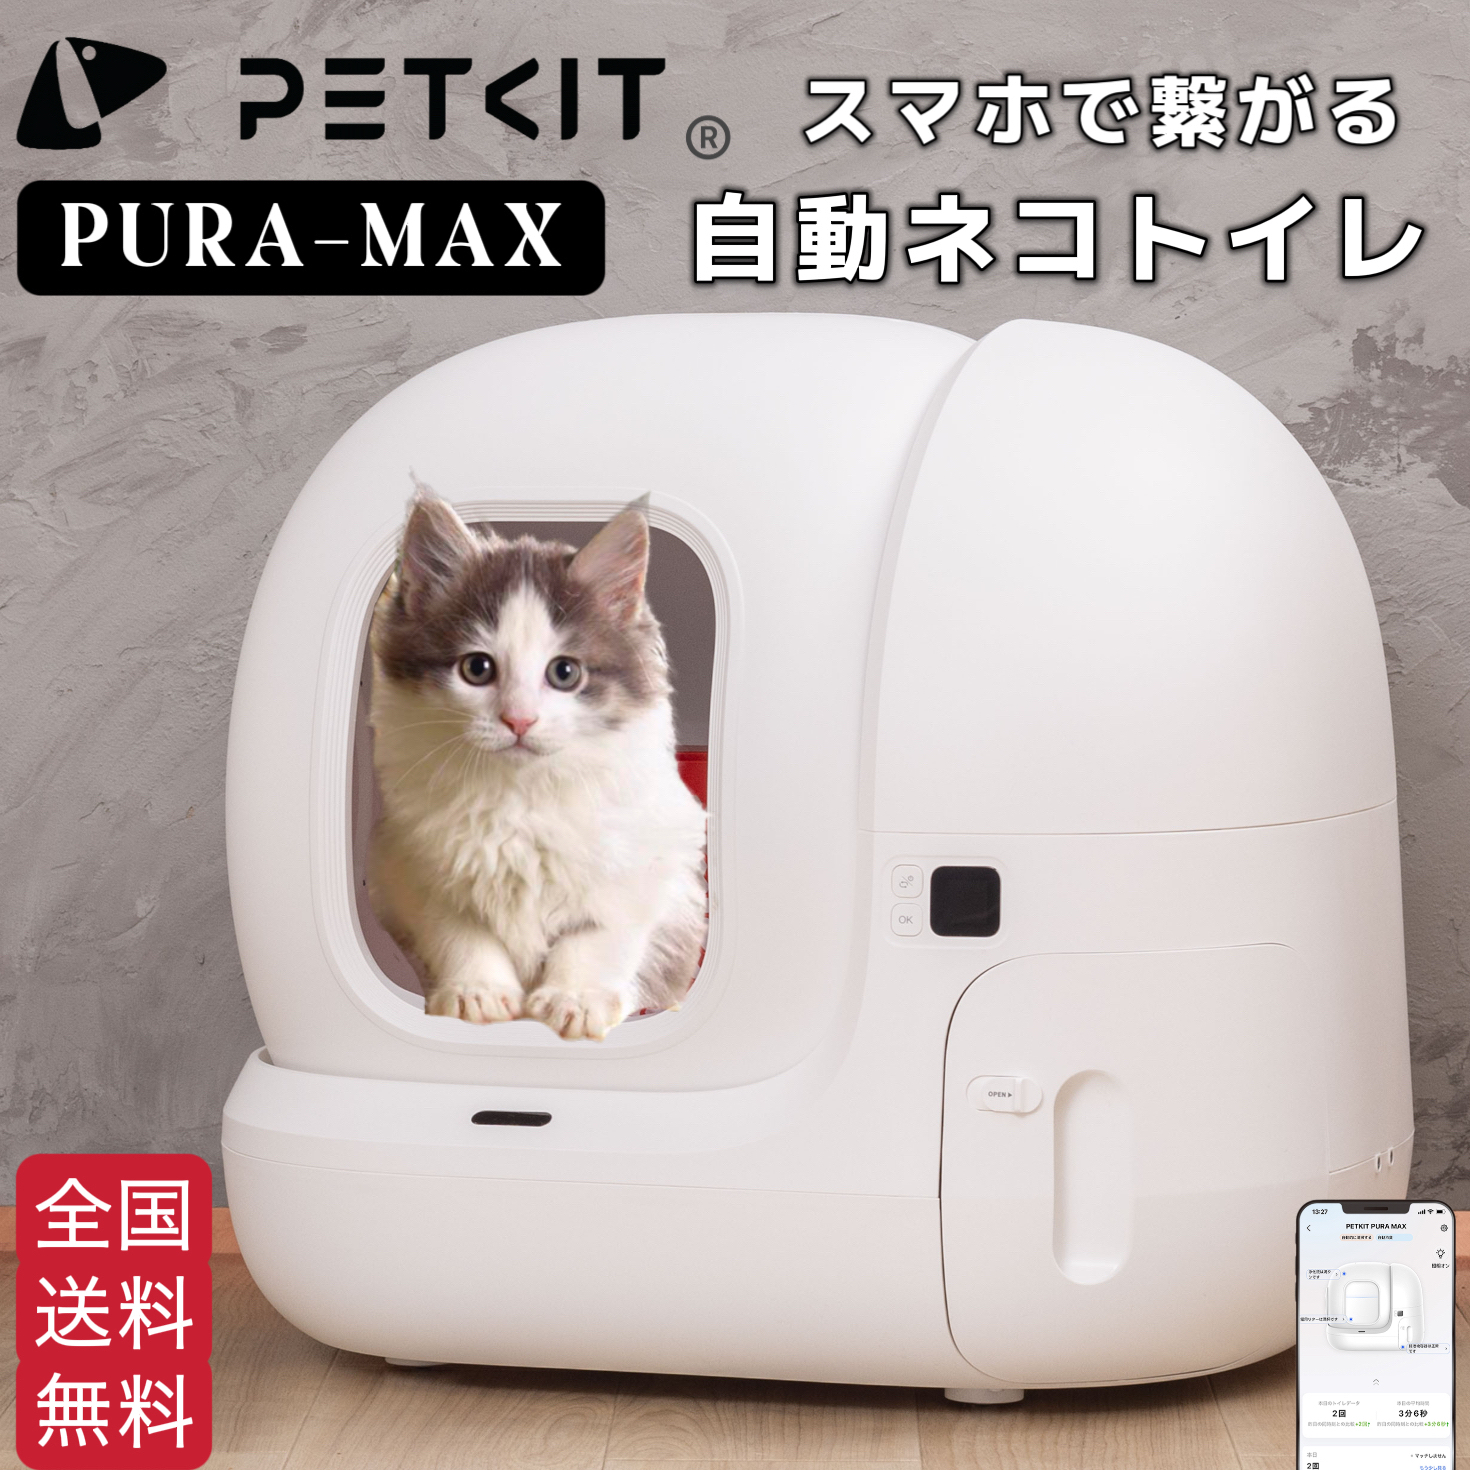 ７月下旬入荷予定【PETKIT-PURA-MAX (入門版) 】自動猫用トイレ 自動ネコトイレ 【全国送料無料 電話相談窓口あり 正規品 安心1年保証】